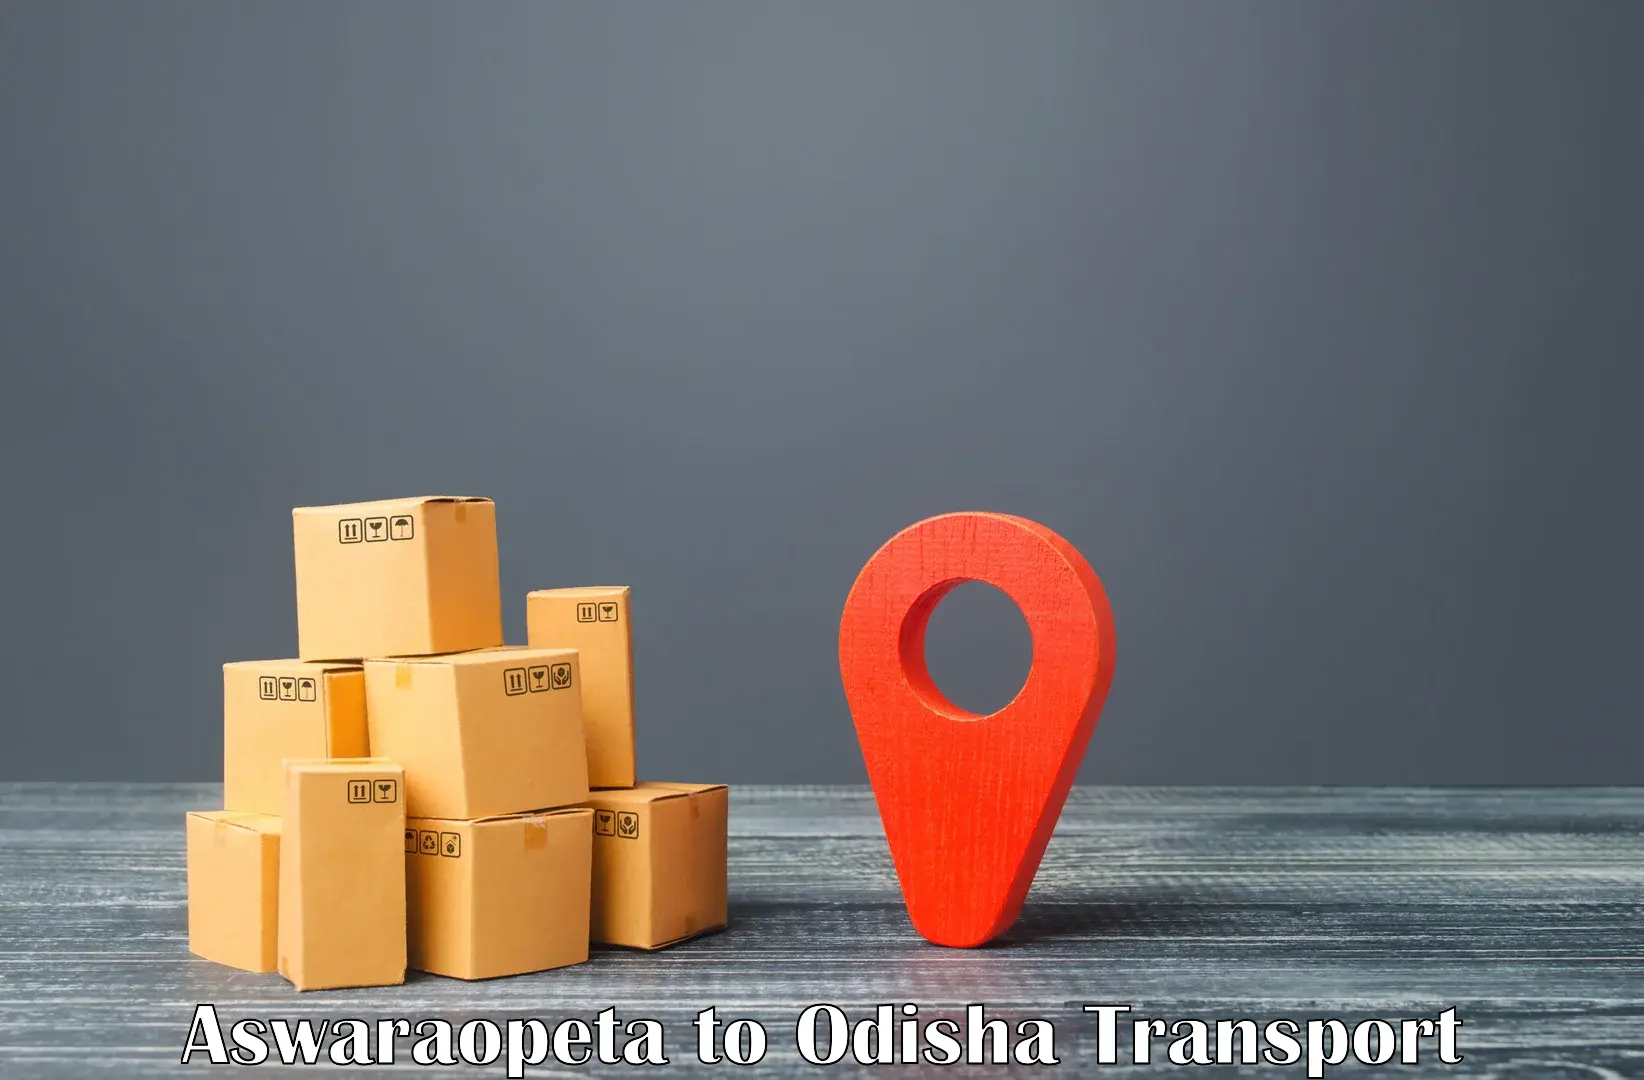 Online transport Aswaraopeta to Berhampur Ganjam